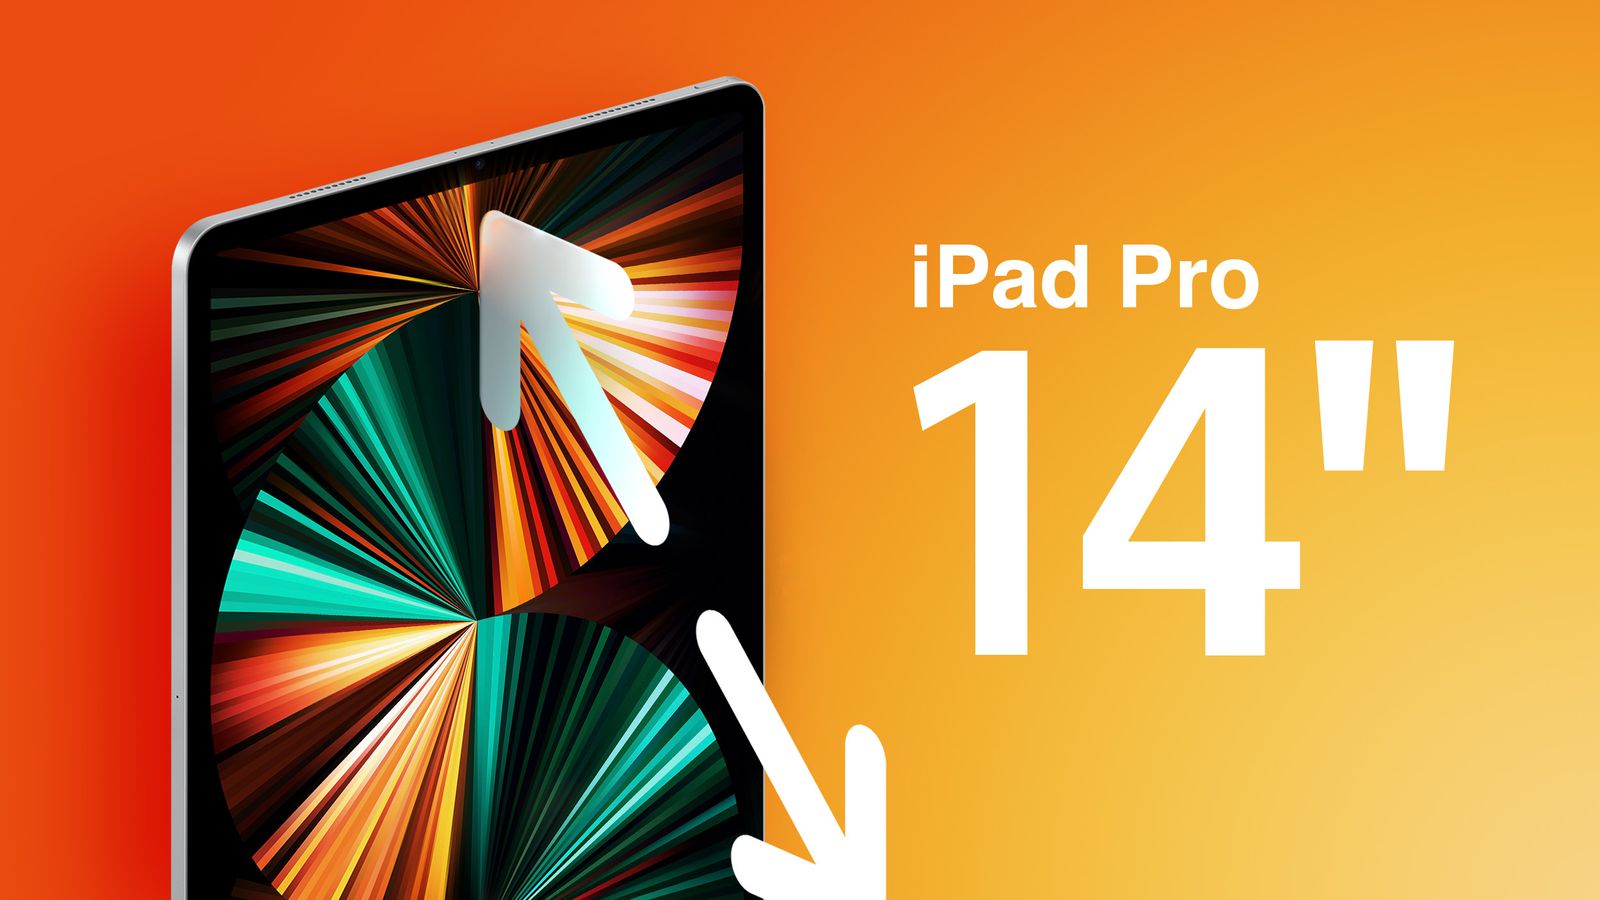 Bạn đang tìm kiếm một chiếc máy tính bảng với màn hình lớn và đẹp? iPad Pro 14-inch với màn hình Mini-LED sắp ra mắt sớm nhất định sẽ là sản phẩm tốt nhất dành cho bạn. Click để xem chi tiết thiết kế và tính năng mà iPad Pro 14-inch sắp tới sẽ mang lại cho bạn nhé!